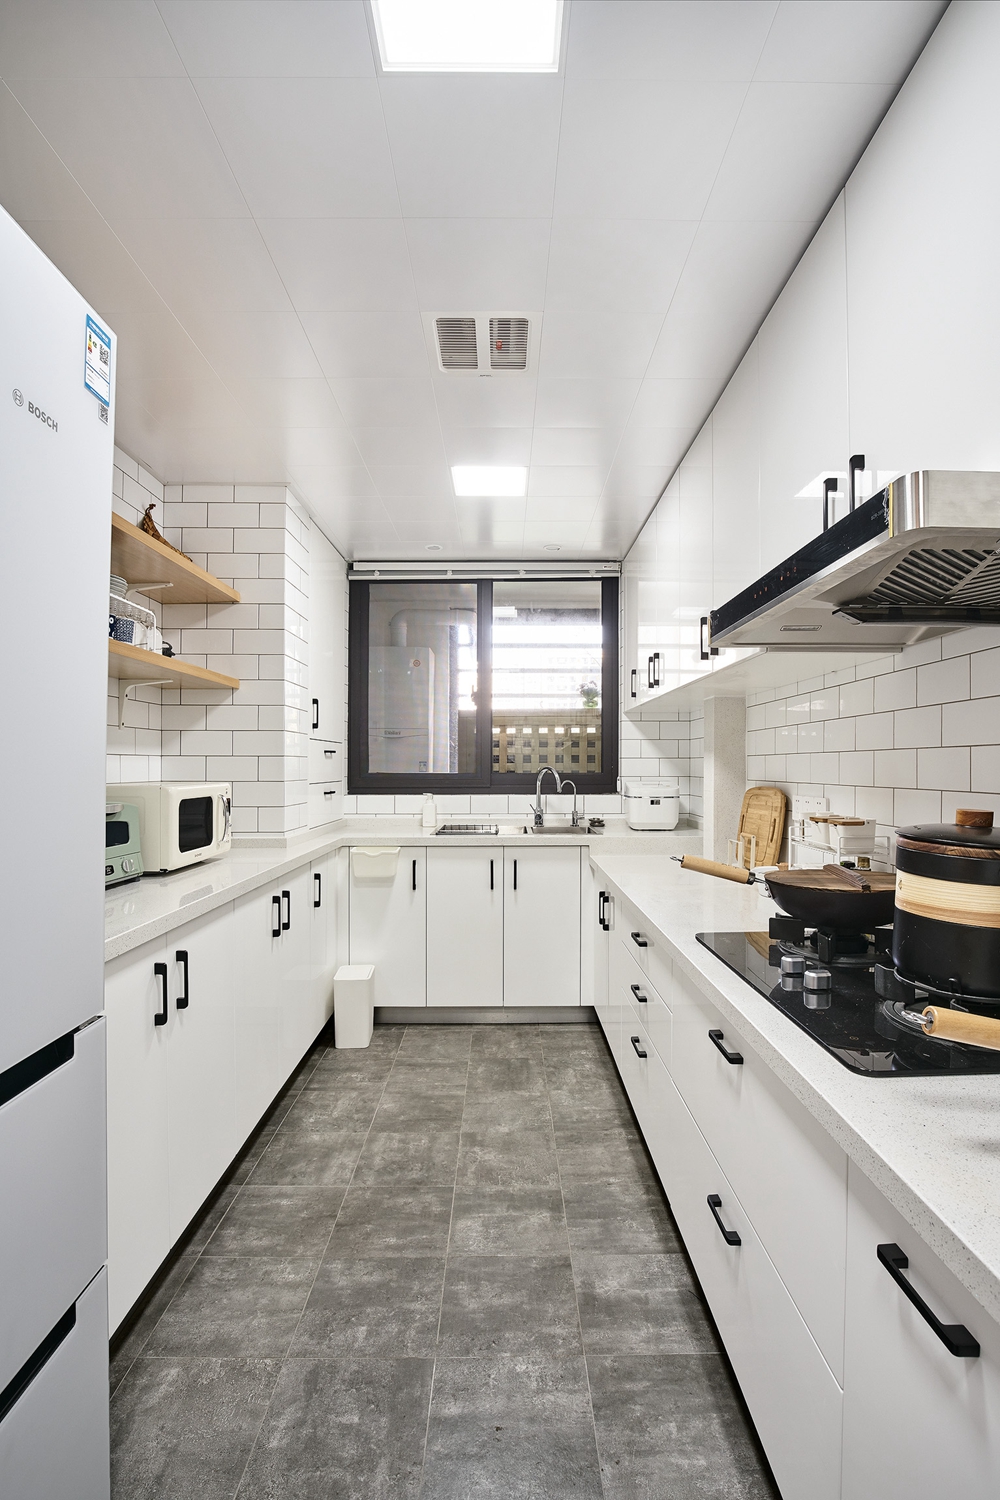 U型厨房以白色为基色，局部搭配木色台板，给人自然质朴之感，自然而不刻意。